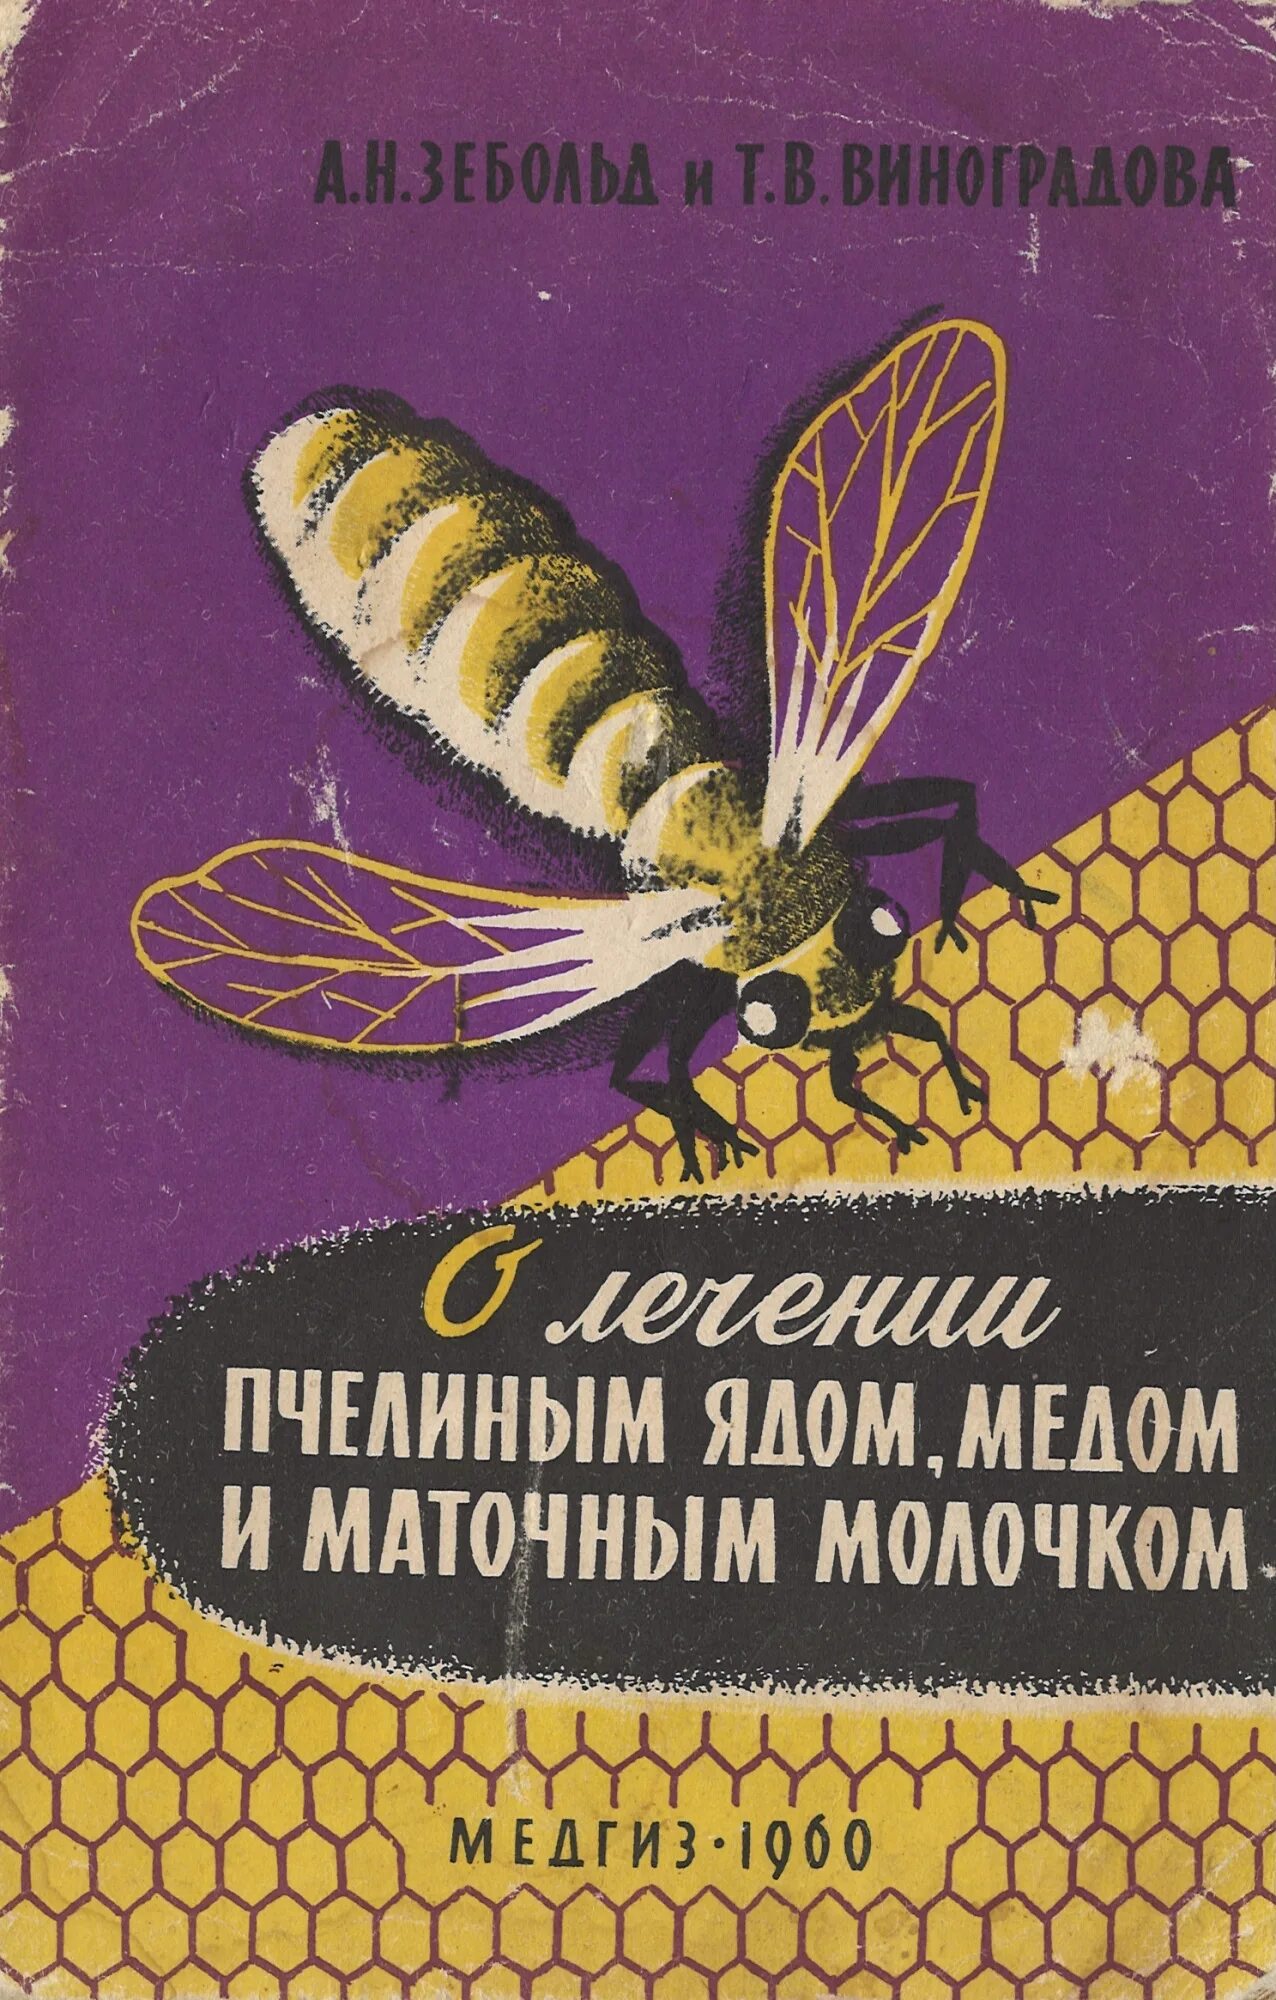 Мед пчелиный яд. Буклет про пчел. Лечение пчелиным ядом